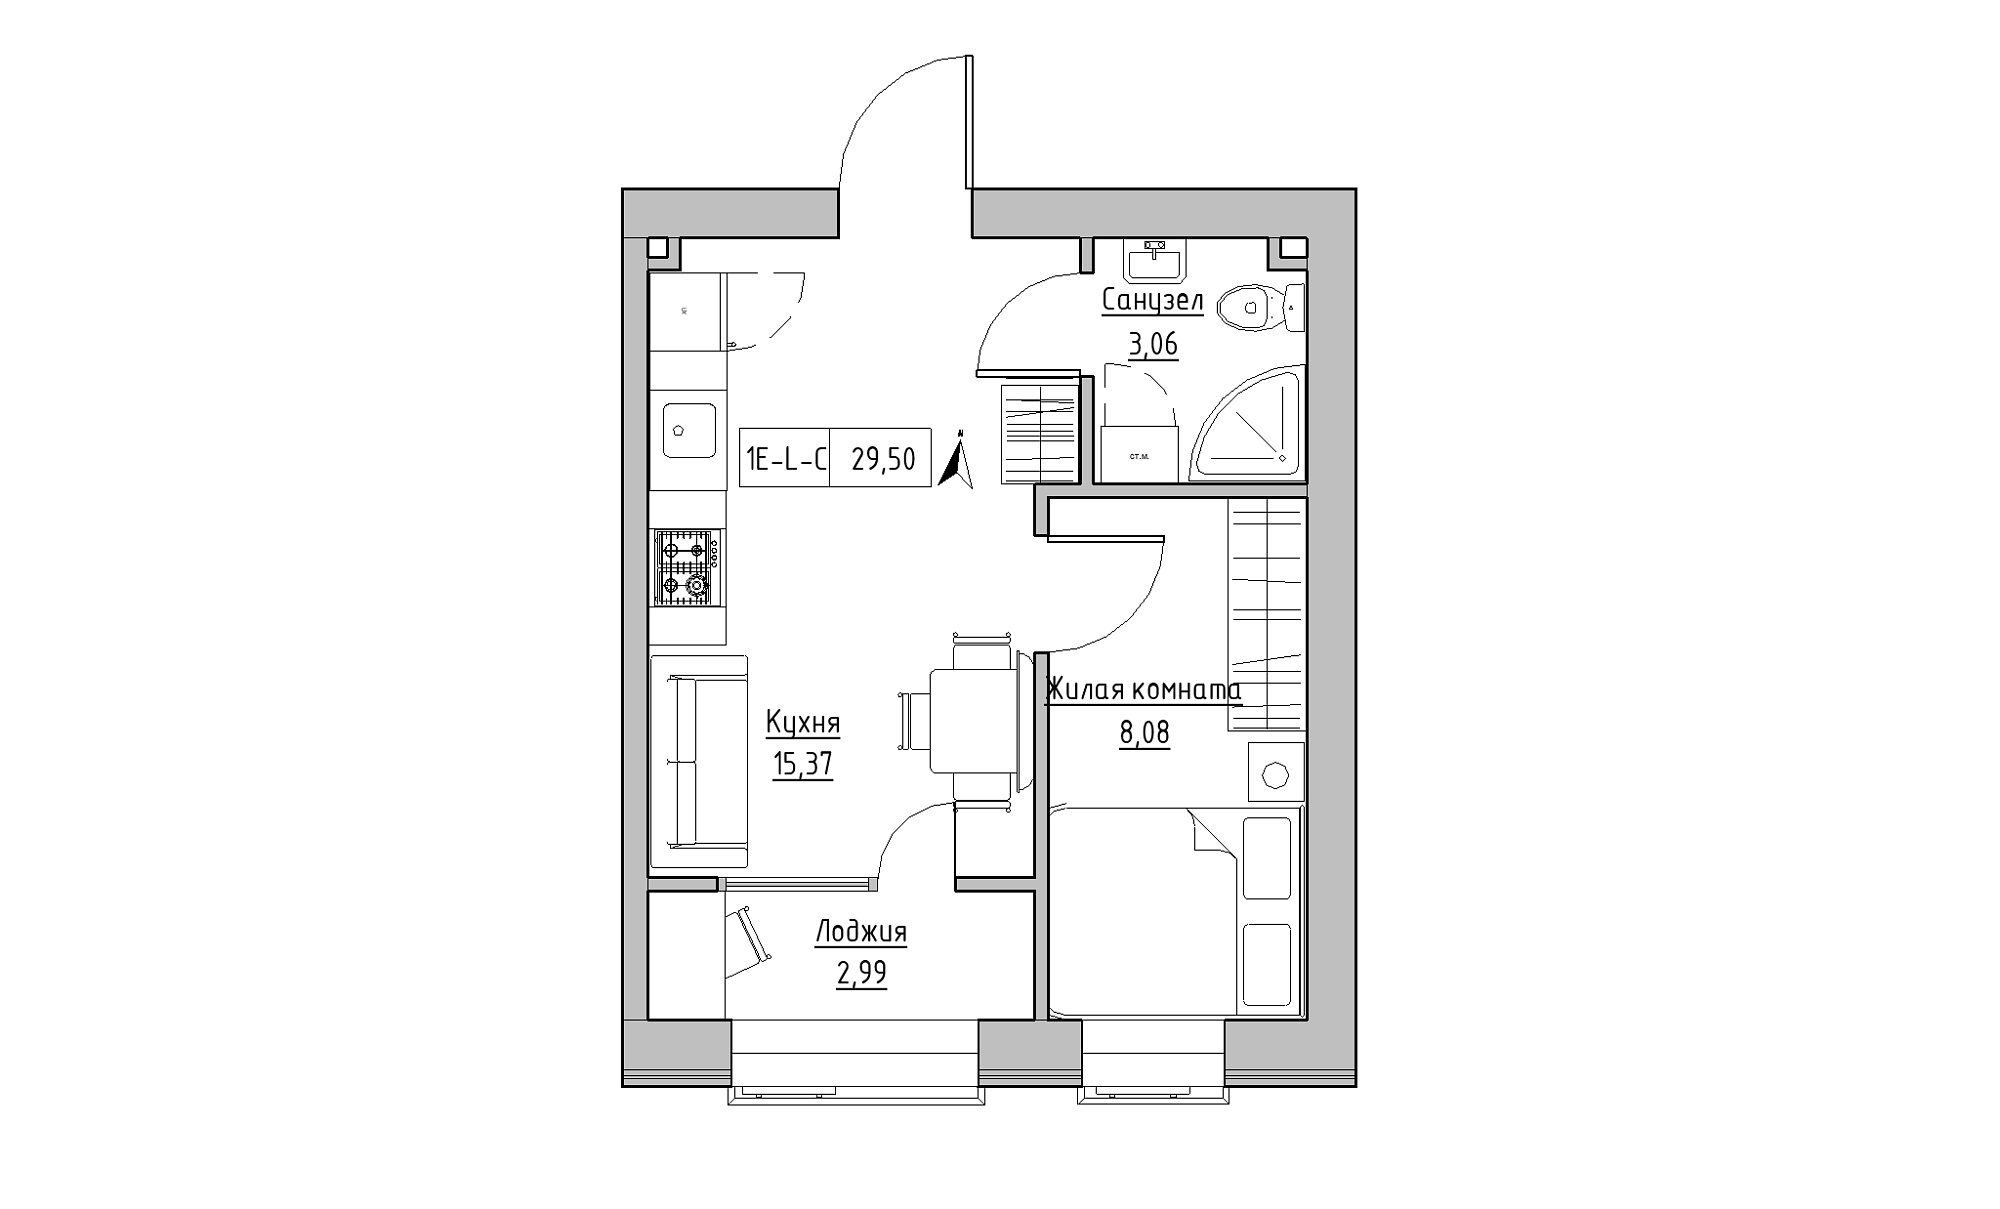 Планування 1-к квартира площею 29.5м2, KS-016-03/0006.